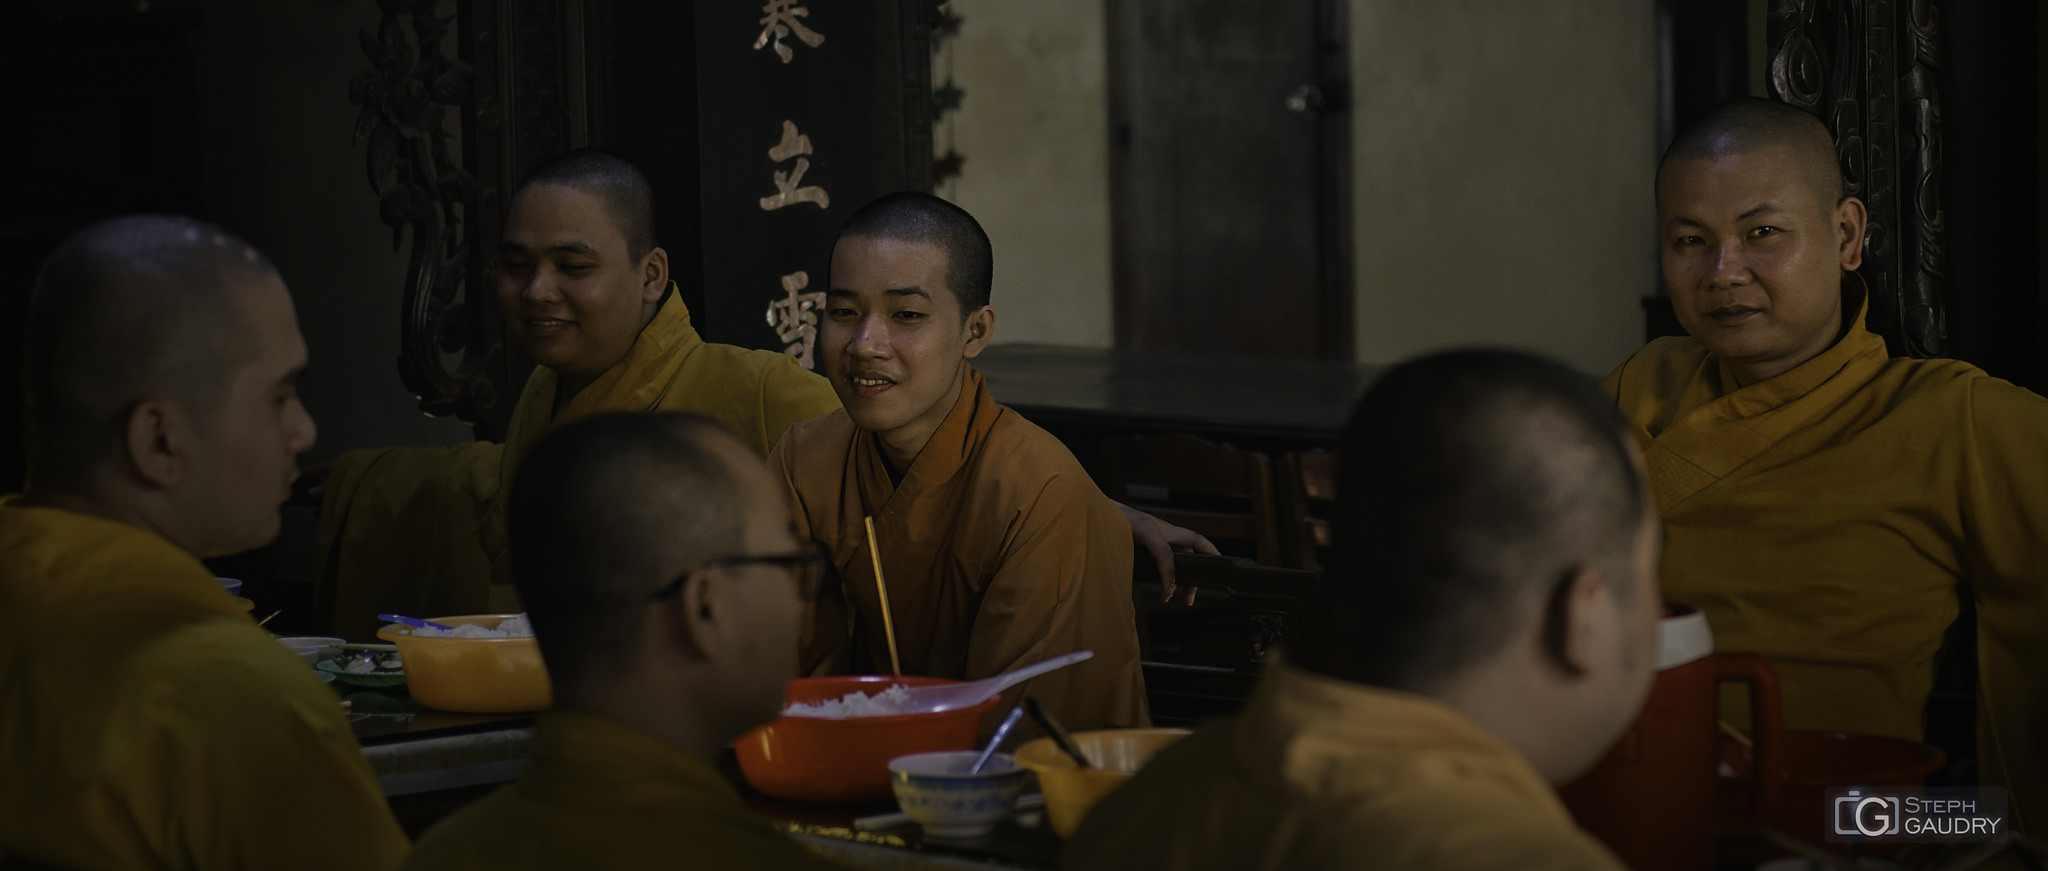 Le repas des moines bouddhistes [Click to start slideshow]